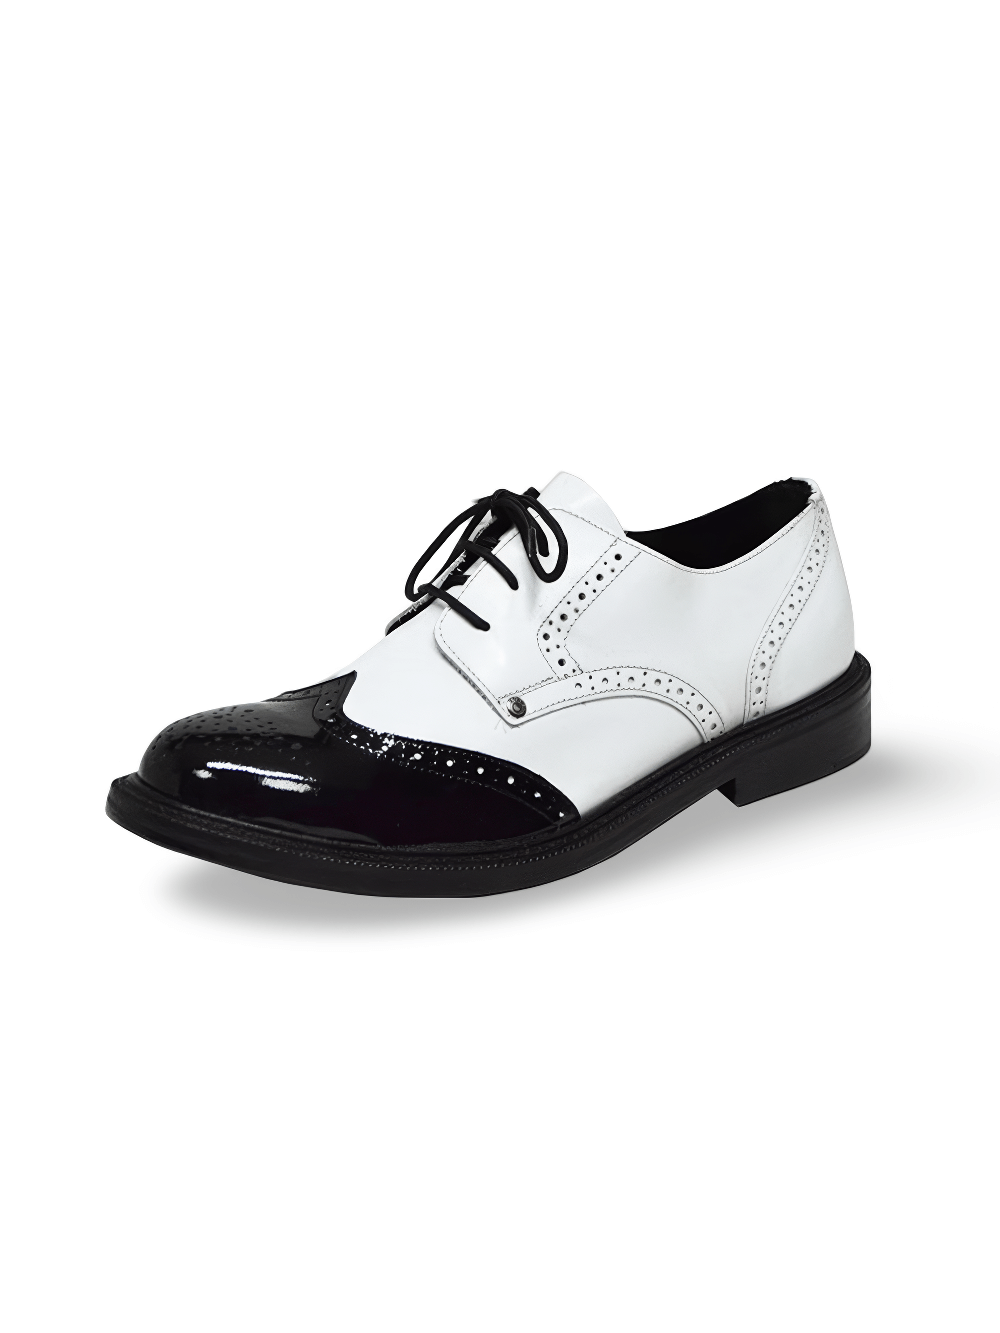 Zapatos Derby elegantes en blanco y negro para hombre con punta redonda